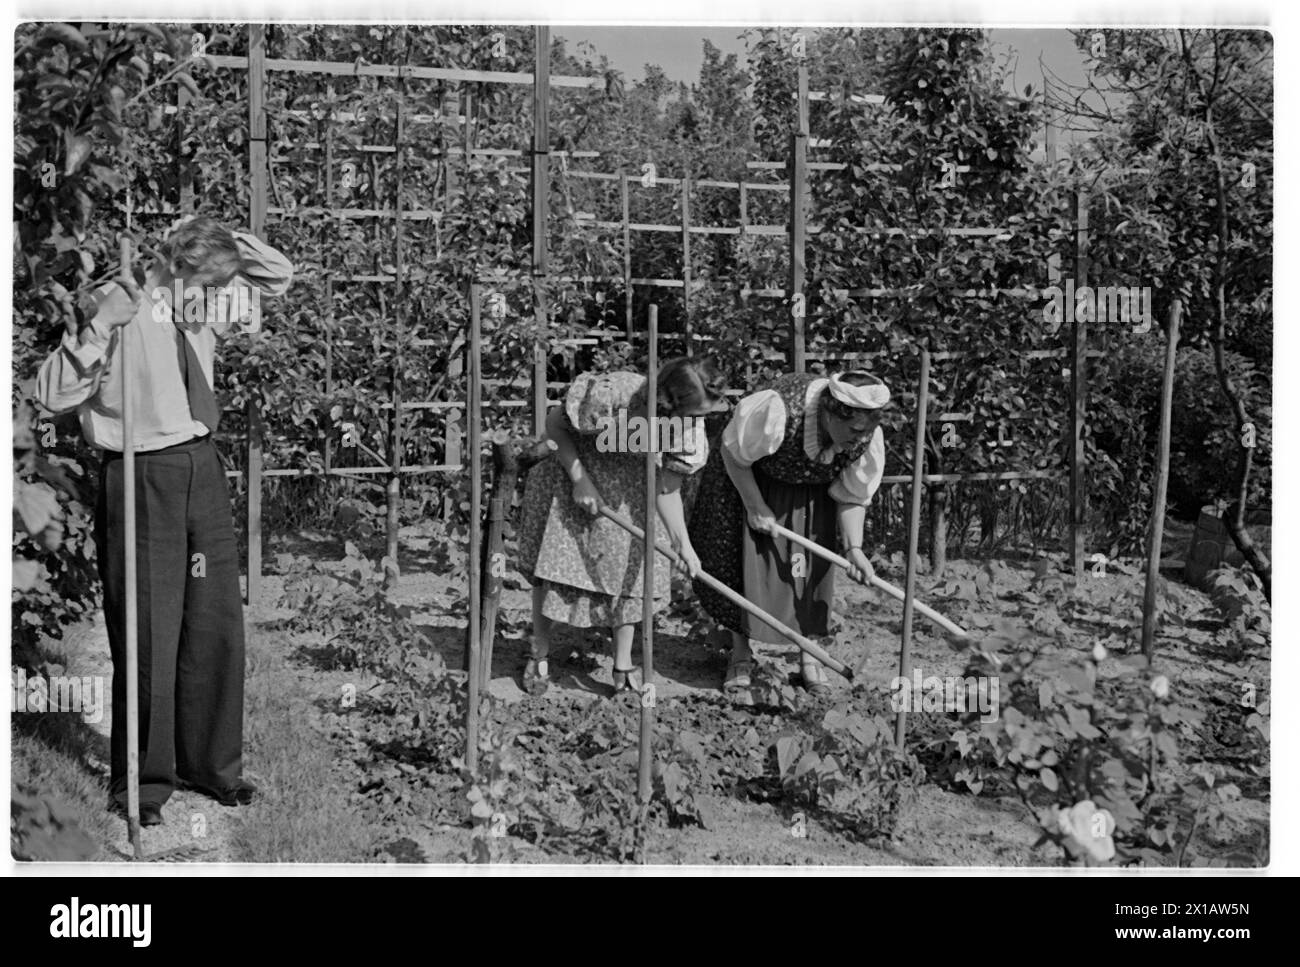 Annie Rosar dans le jardin de lotissement, sur le jardinage. - 19400624_PD0013 - Rechteinfo : droits gérés (RM) Banque D'Images